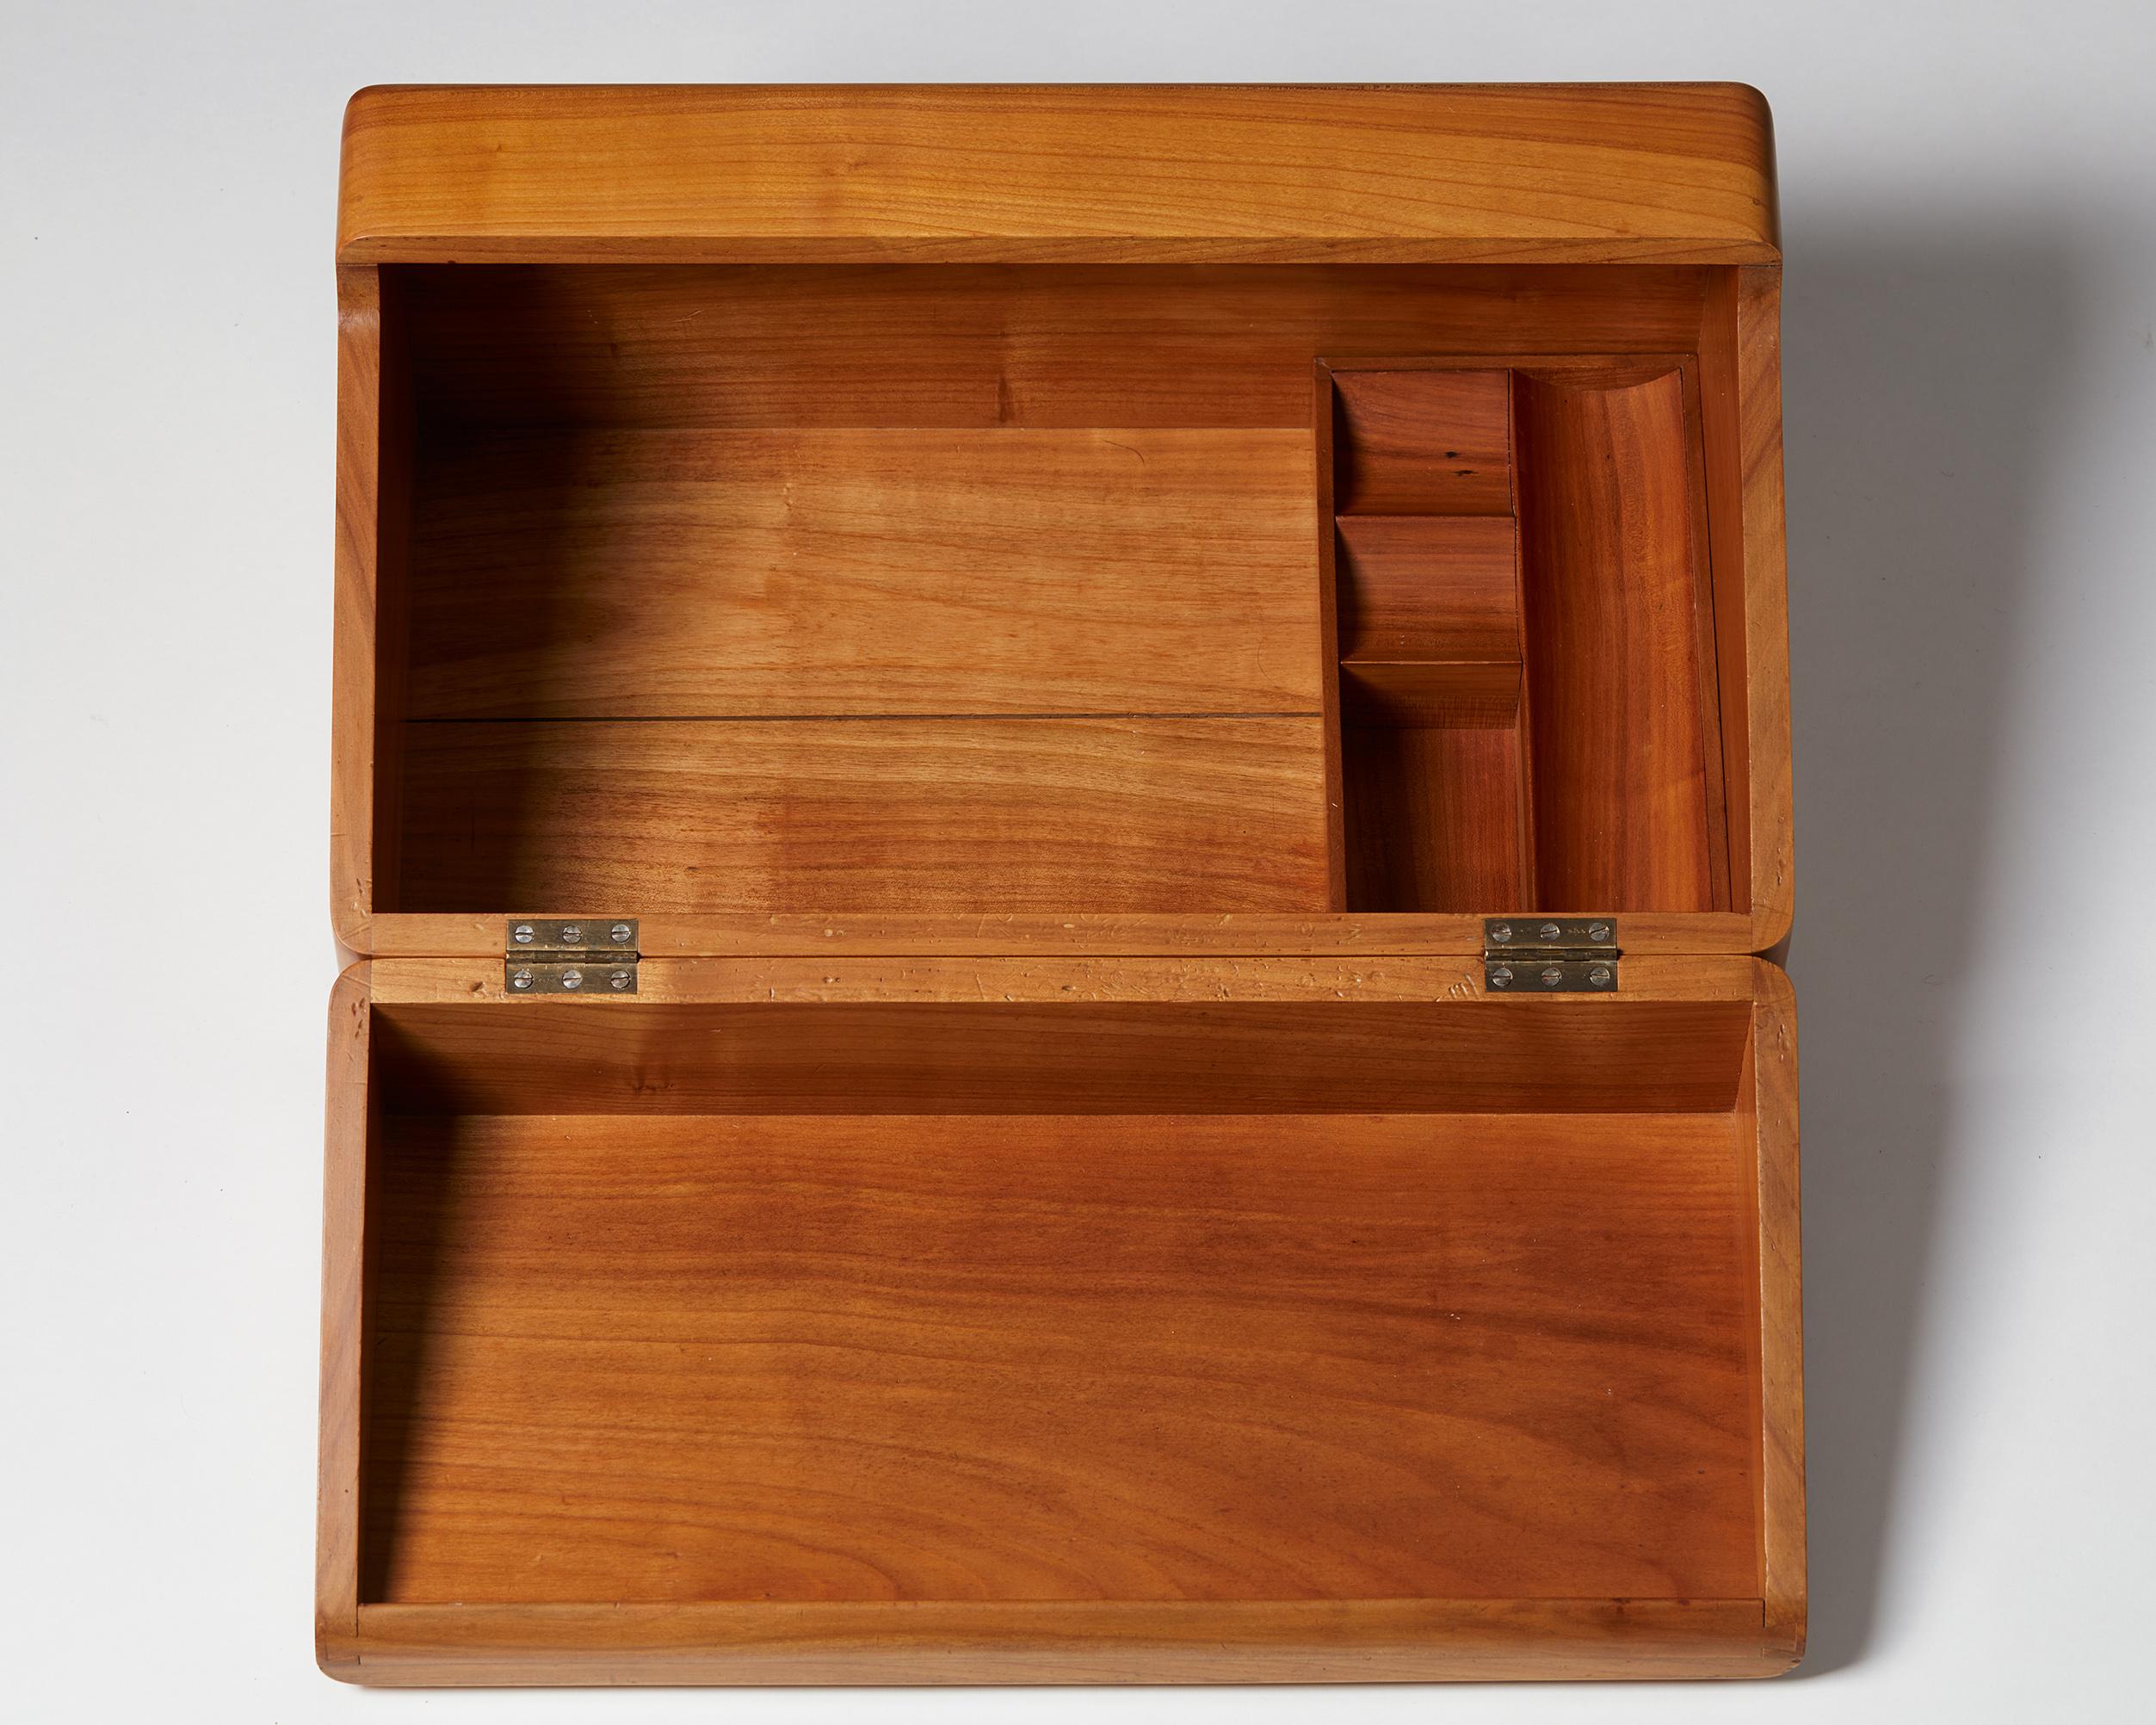 Mahogany Sewing Box Designed by Magnus L. Stephensen for Axel Søllner, Denmark, 1935